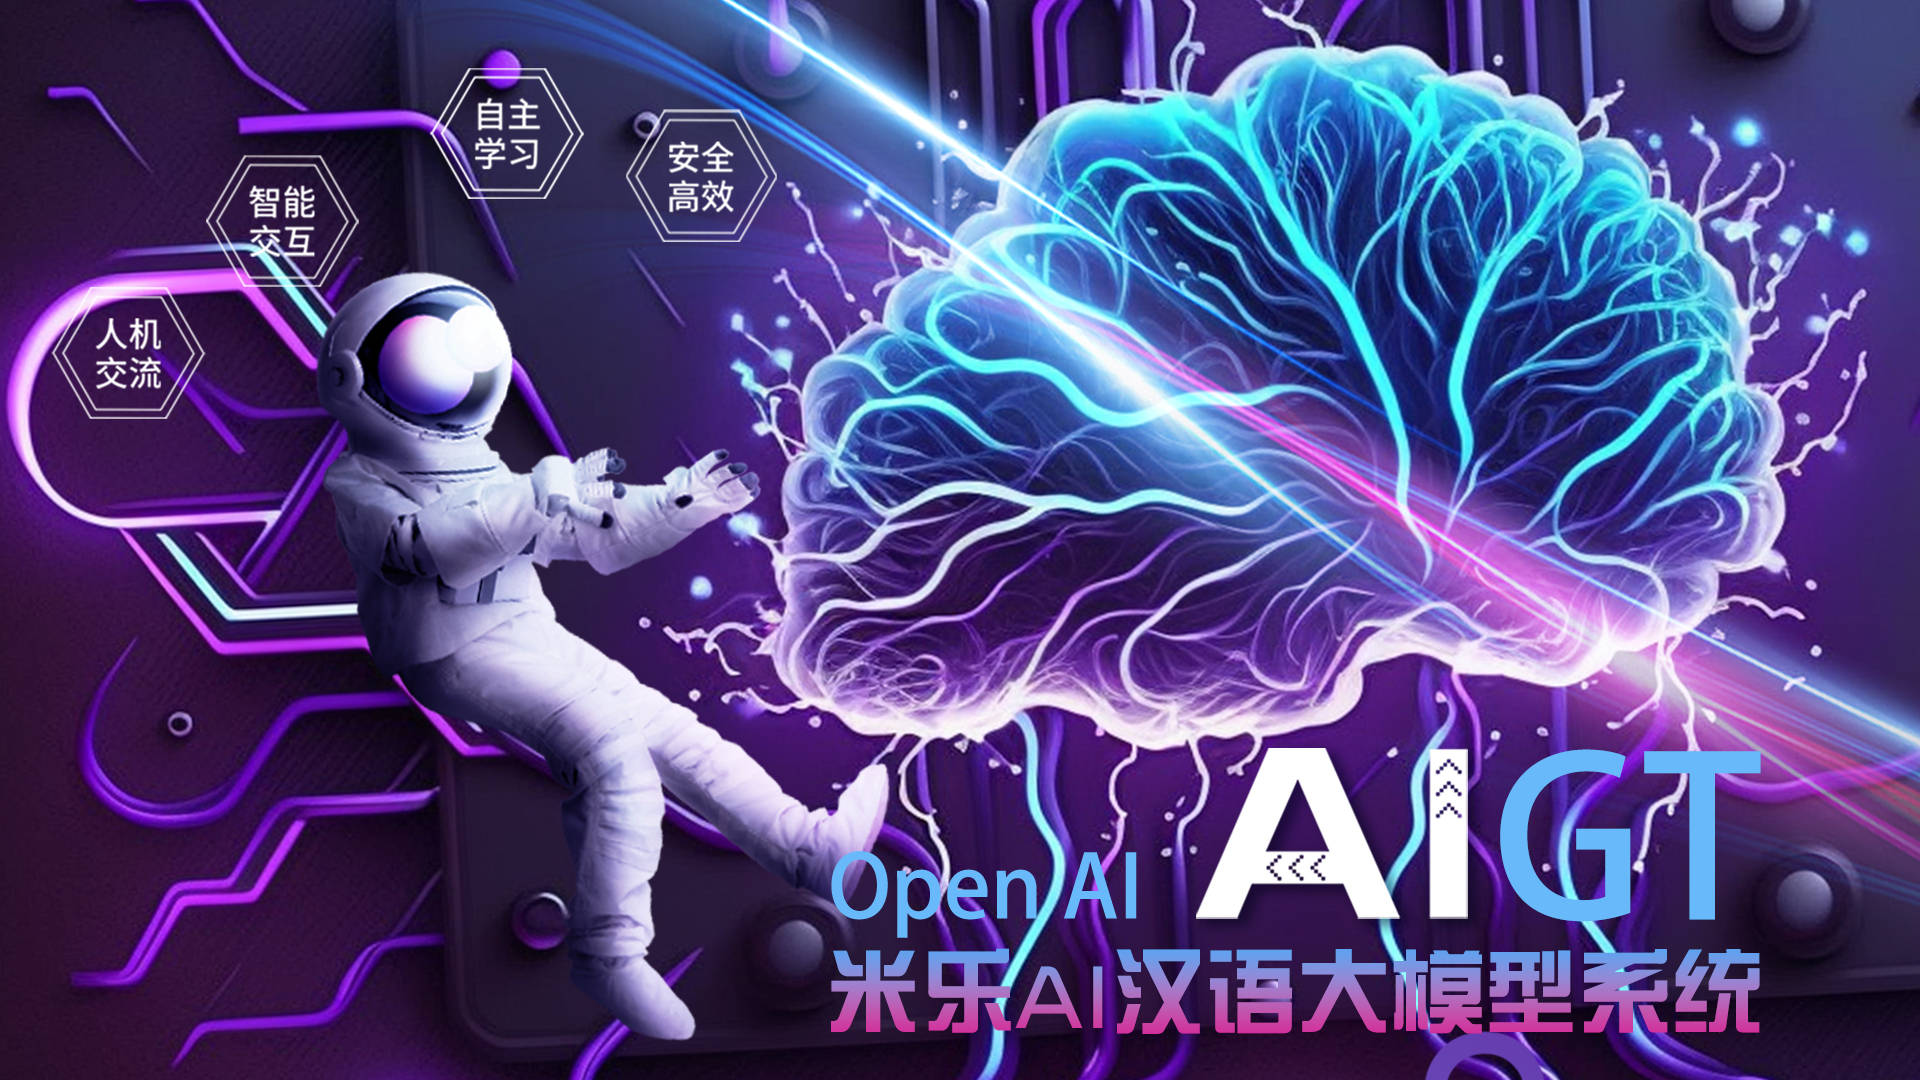 米乐百业——米乐集团与OpenAi公司签约联合开采AIGT汉语大模子体系